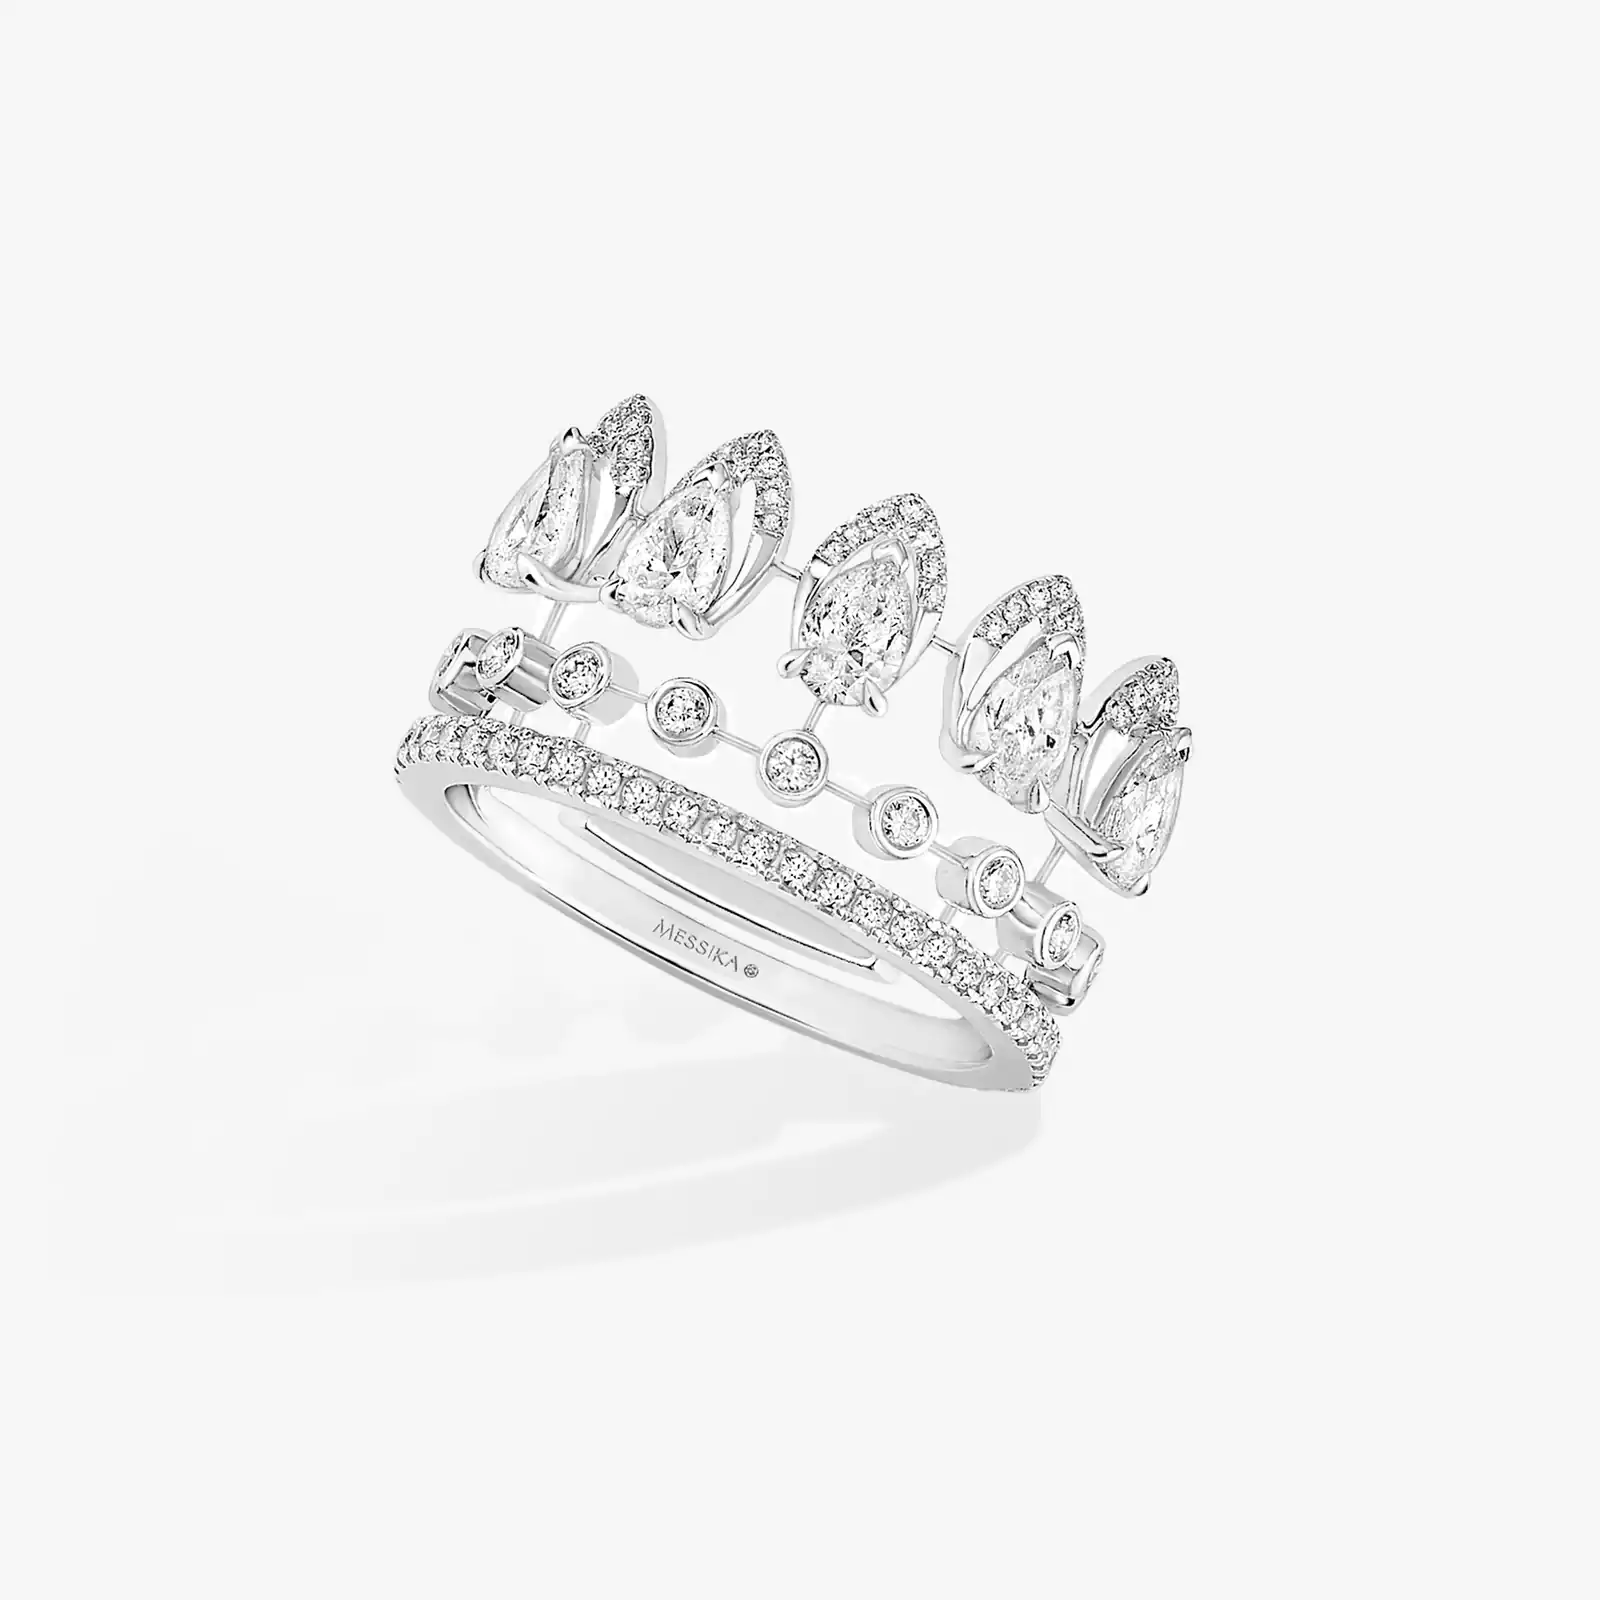 Ring For Her White Gold Diamond Alliance Desert Bloom 07364-WG